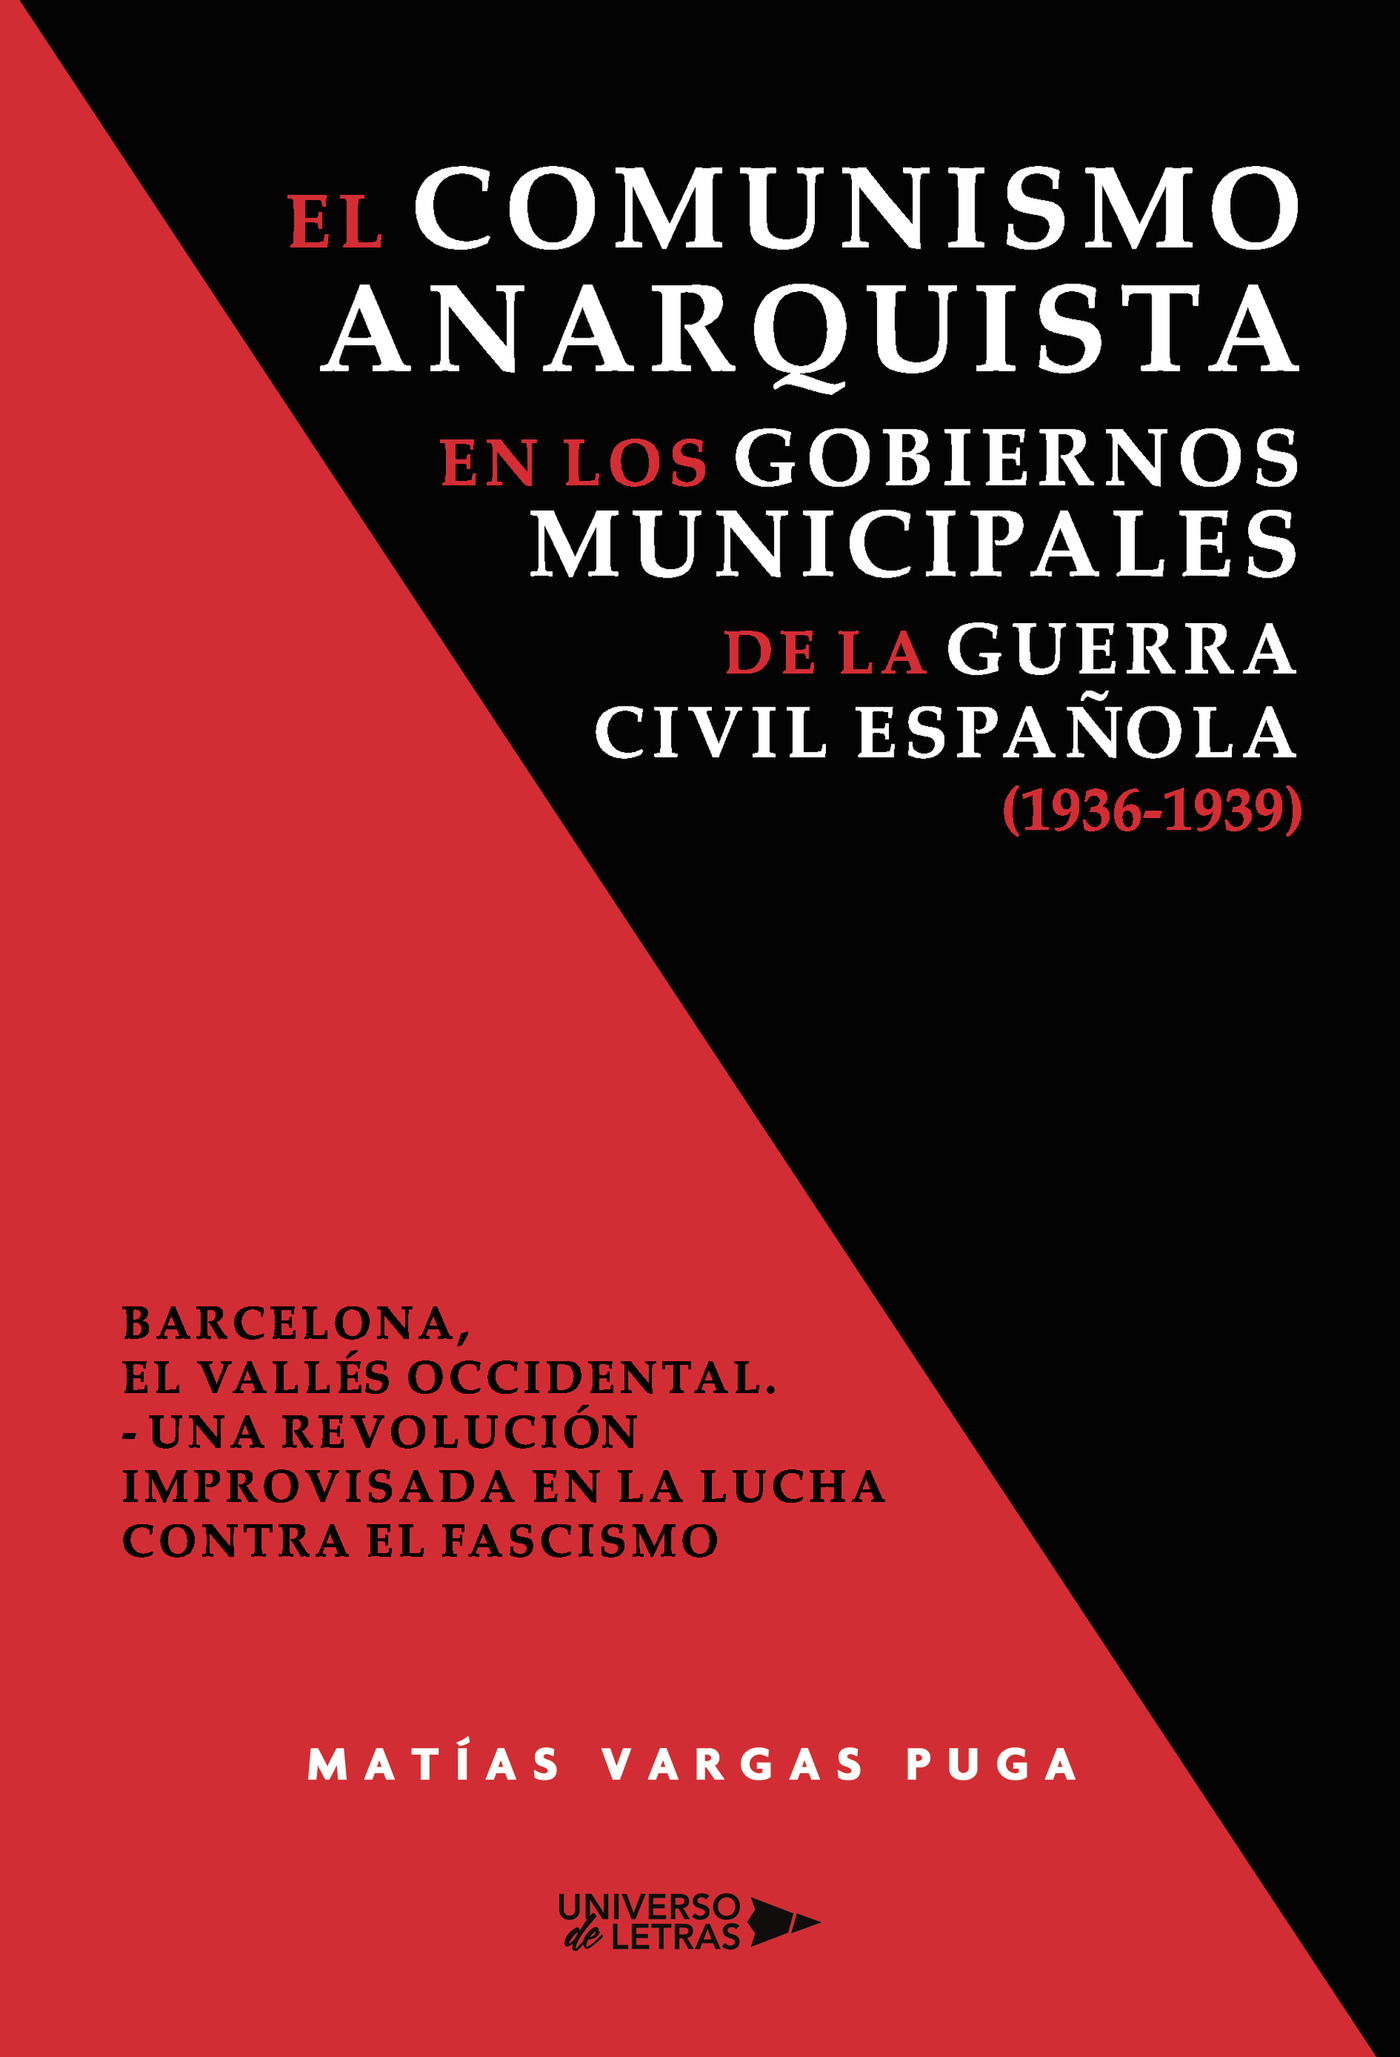 El comunismo anarquista en los gobiernos municipales de la guerra civil española (1936-1939) : Barcelona, El Vallés occidental : una revolución improvisada en la lucha contra el fascismo